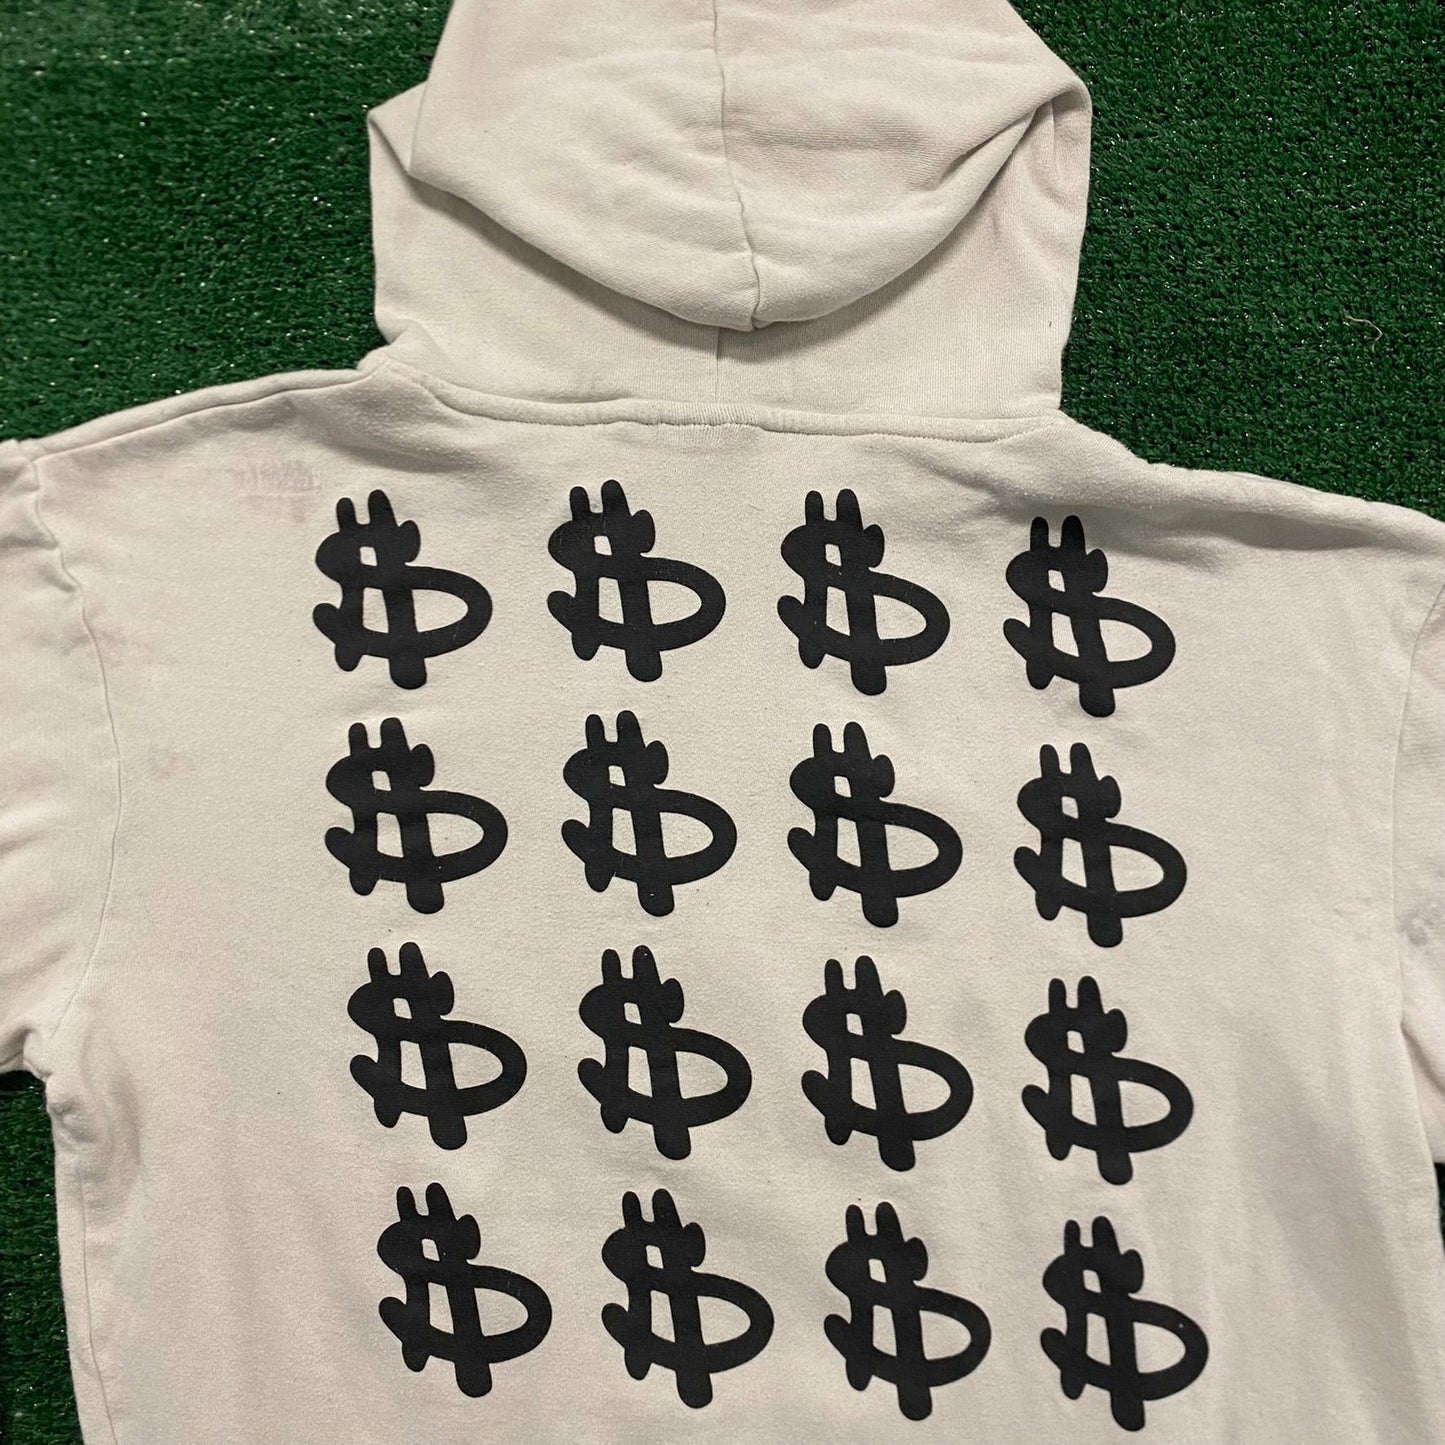 Mr. Monopoly Money Pop Art Vintage Hoodie Sweatshirt